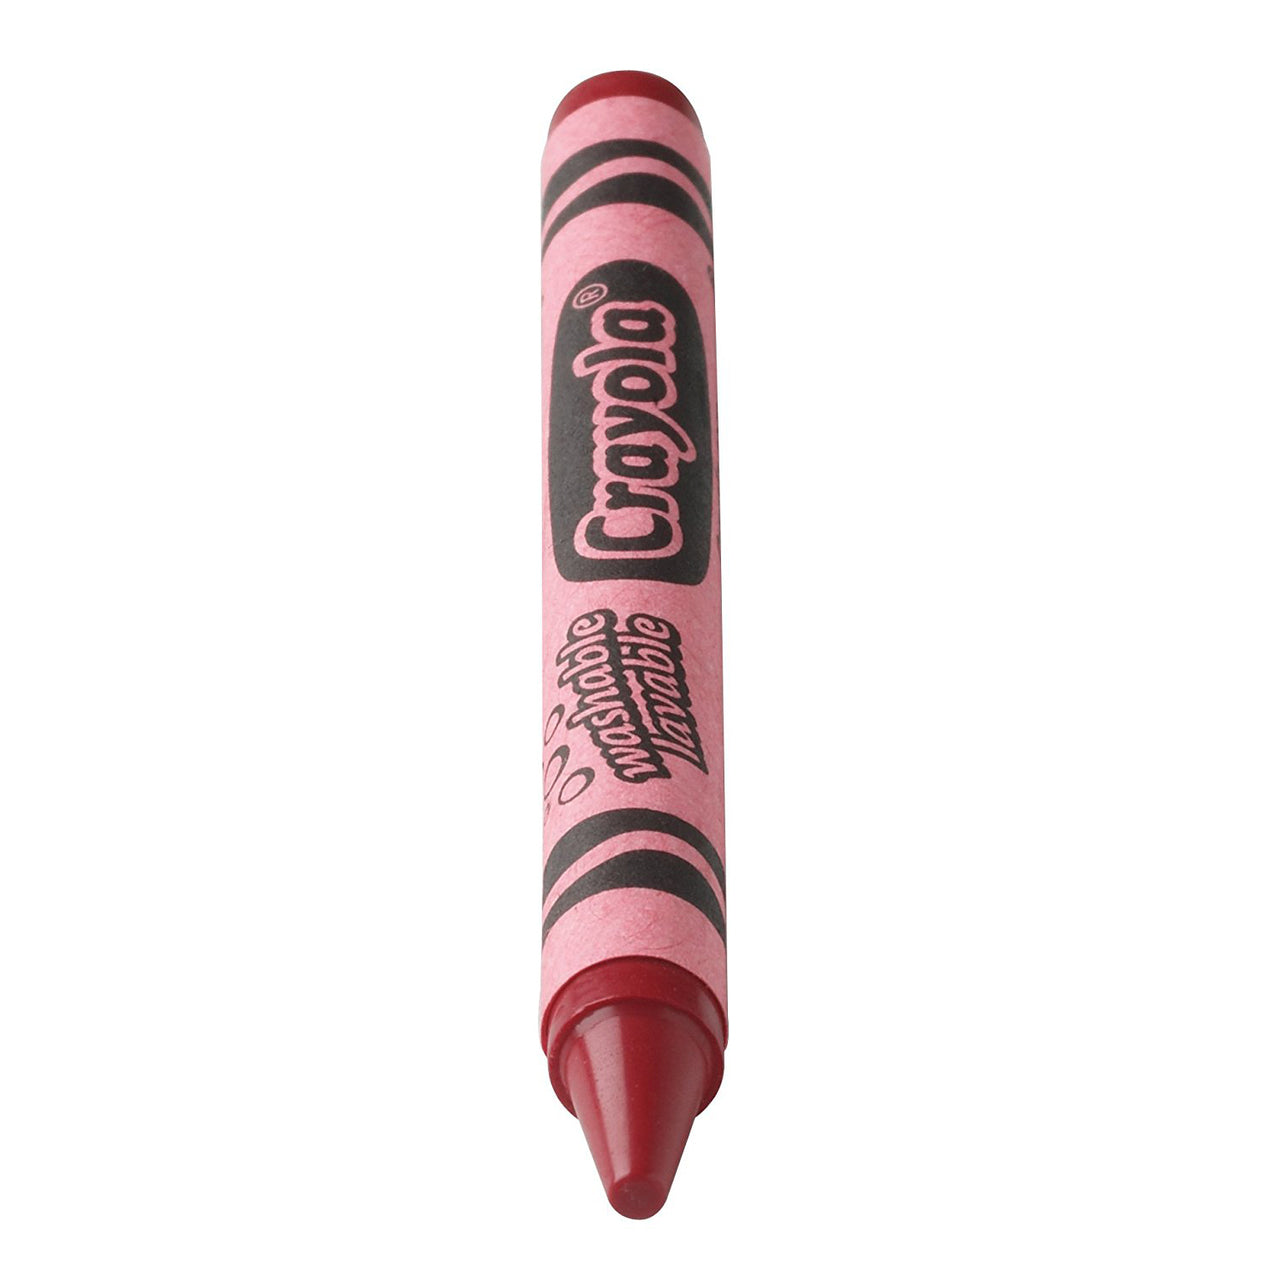 Crayola 8ct Washable Markers Fine